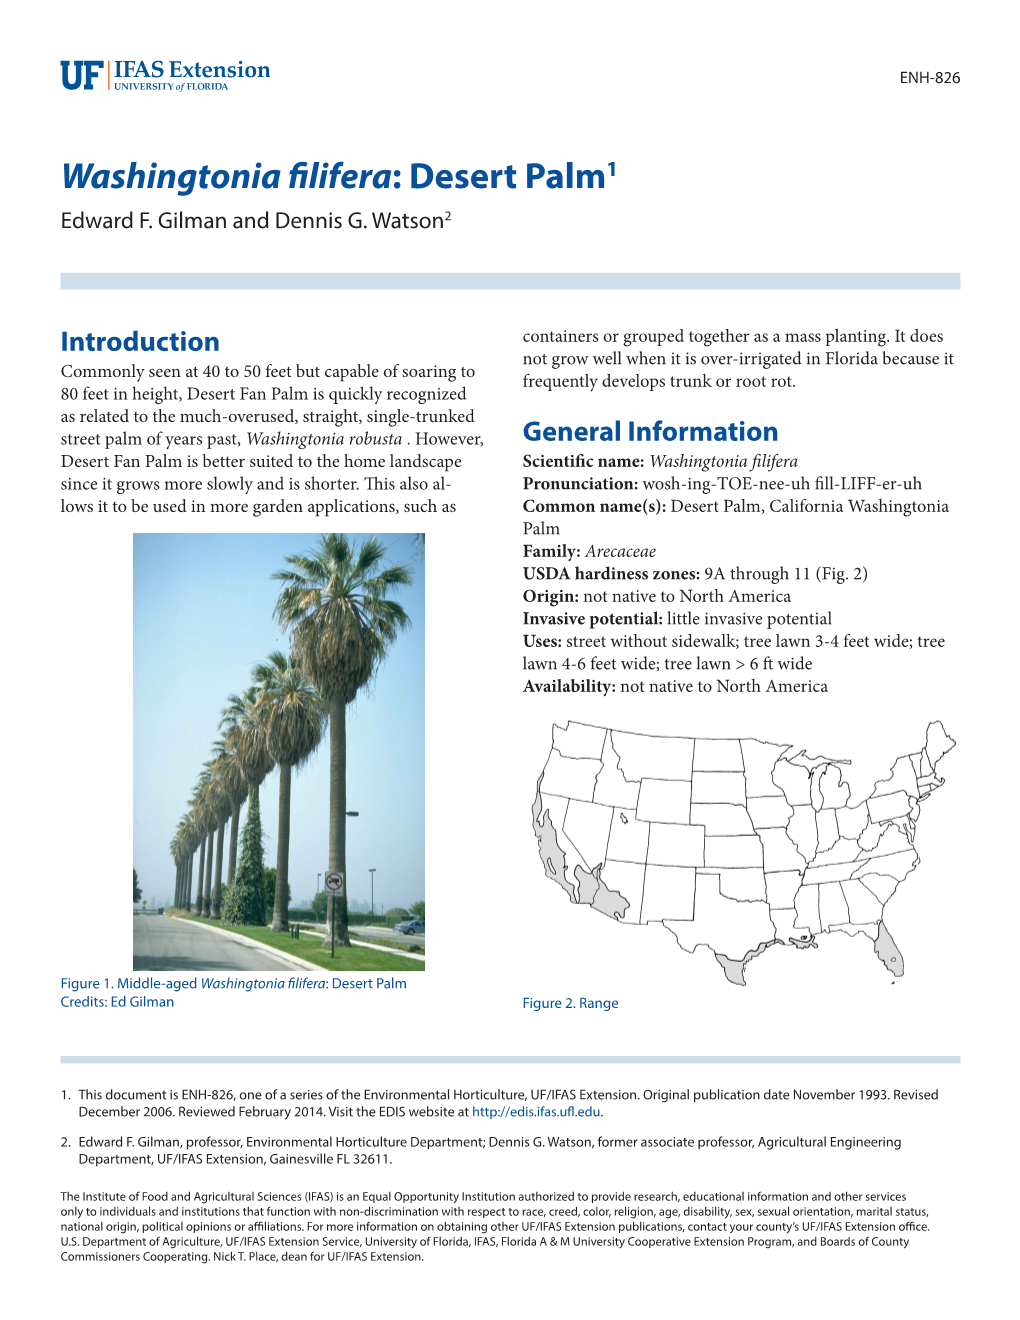 Washingtonia Filifera: Desert Palm1 Edward F